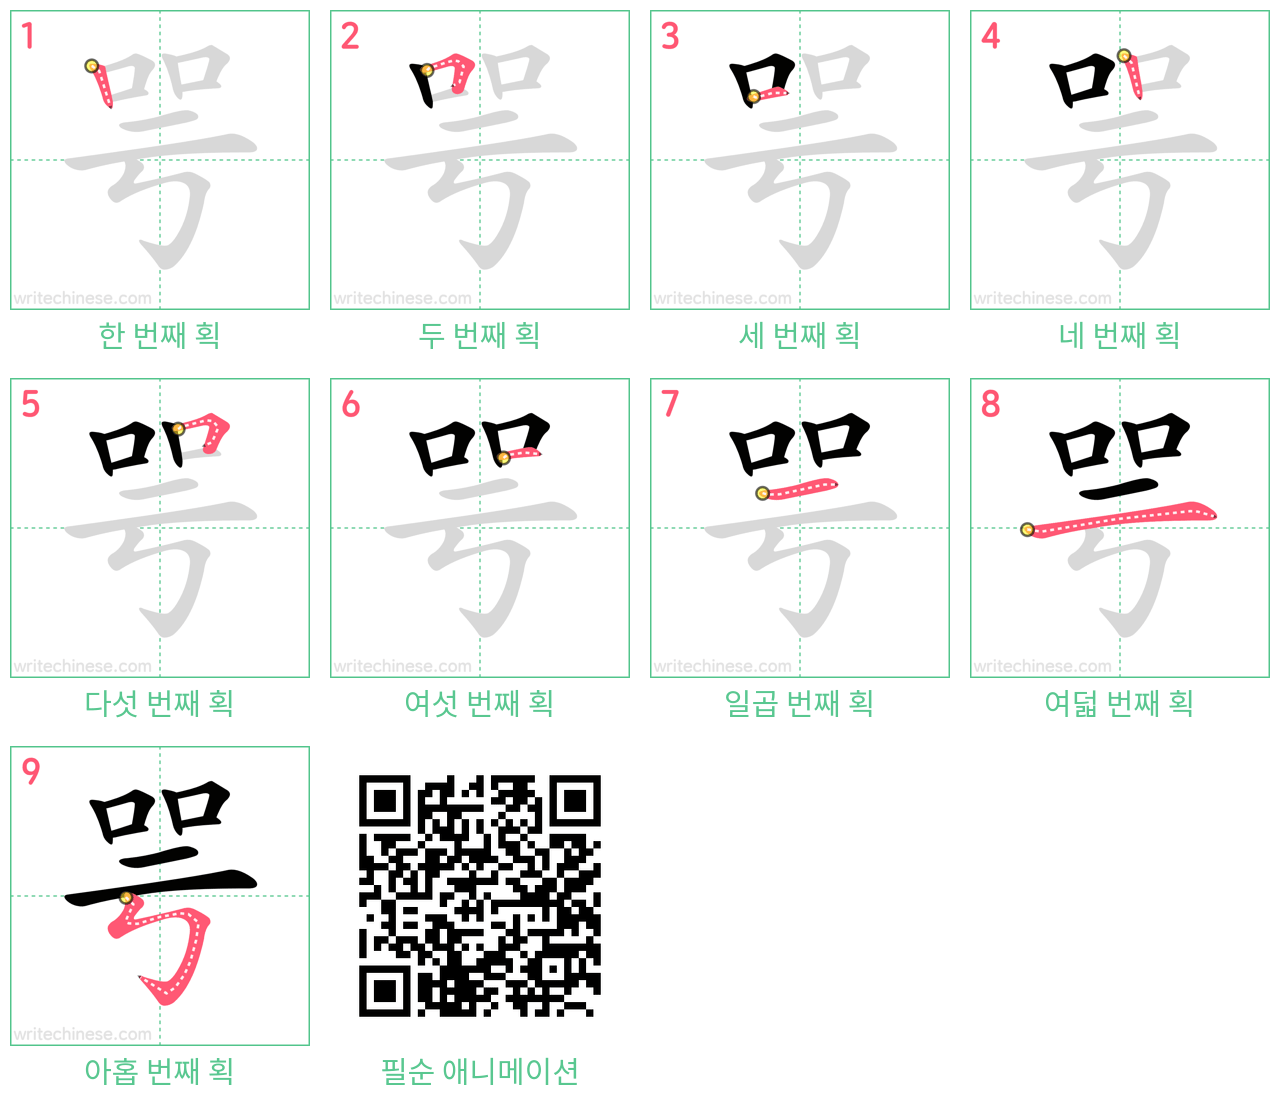 咢 step-by-step stroke order diagrams